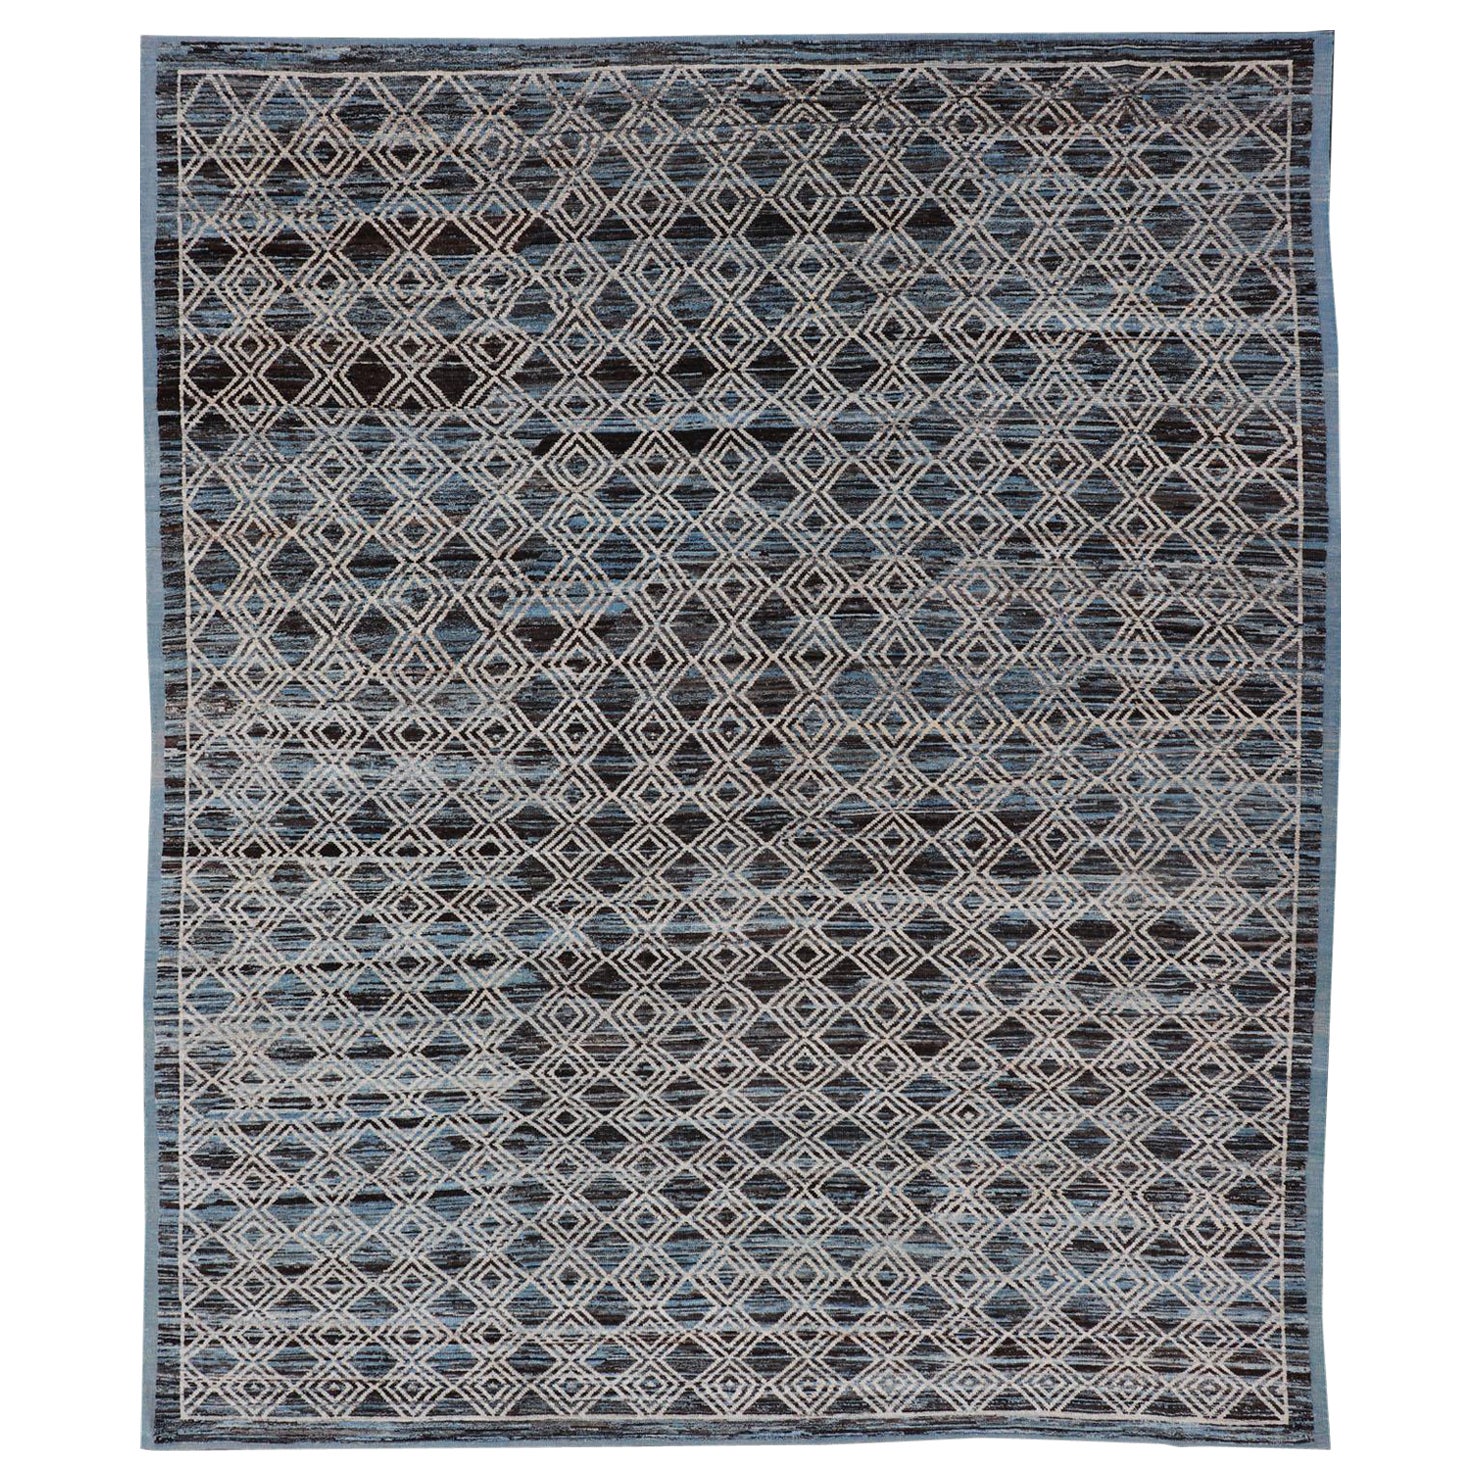 Afghanischer moderner Teppich in Blau, Anthrazit, Grau und Braun mit geometrischem Muster